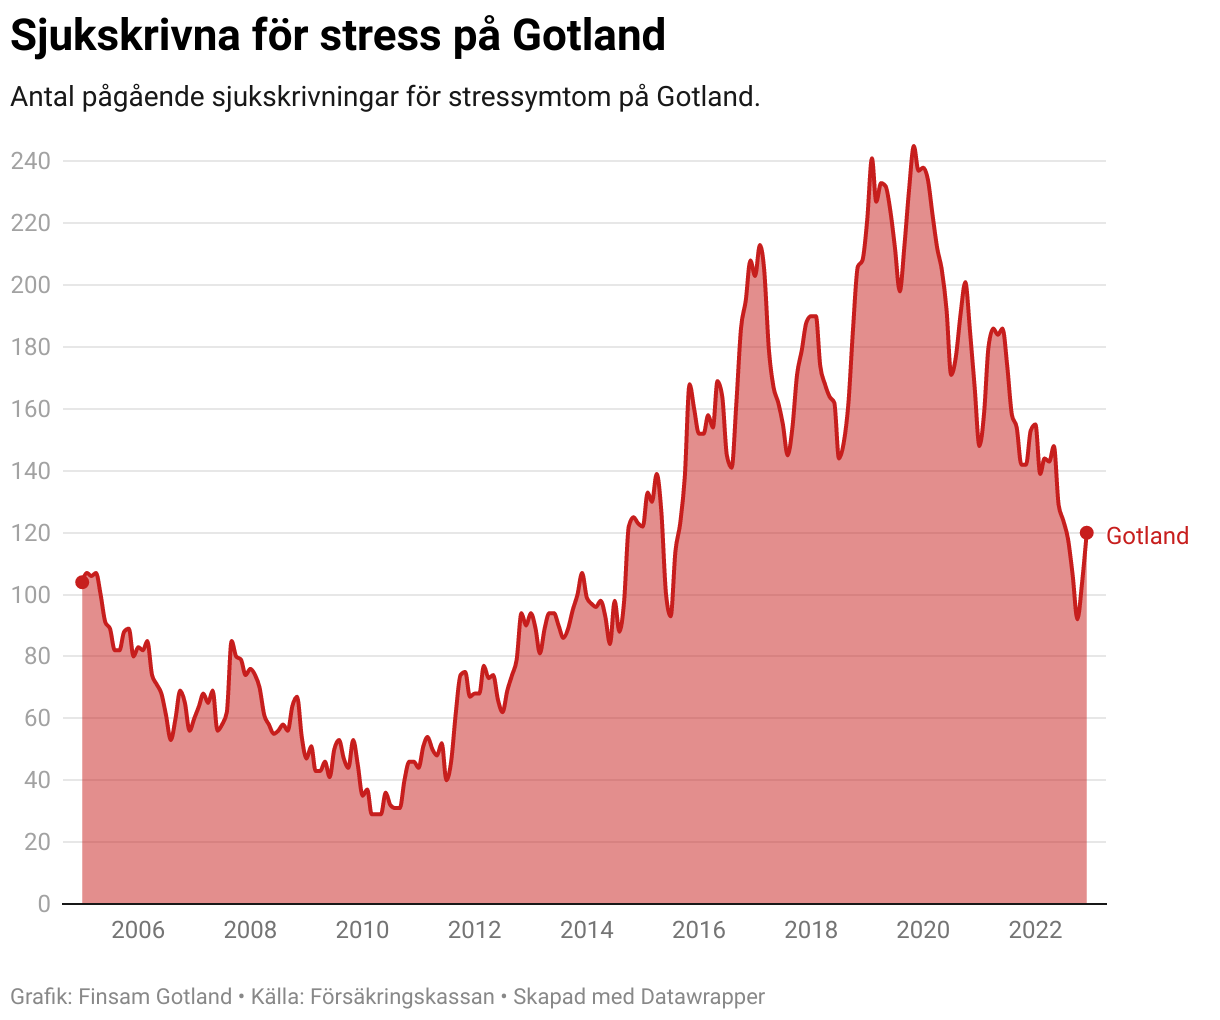 En graf som visar antalet pågående sjukskrivningar på Gotland månad för månad sedan 2006. Grafen visar hur antalet sjukskrivningar minskade från cirka 100 personer 2006, till runt 30 år 2010. Därefter ökade sjukskrivningarna stadigt till en peak åren 2019 och 2020 på strax över 200 personer. De senaste åren har talen sjunkit till strax över 100 personer igen.